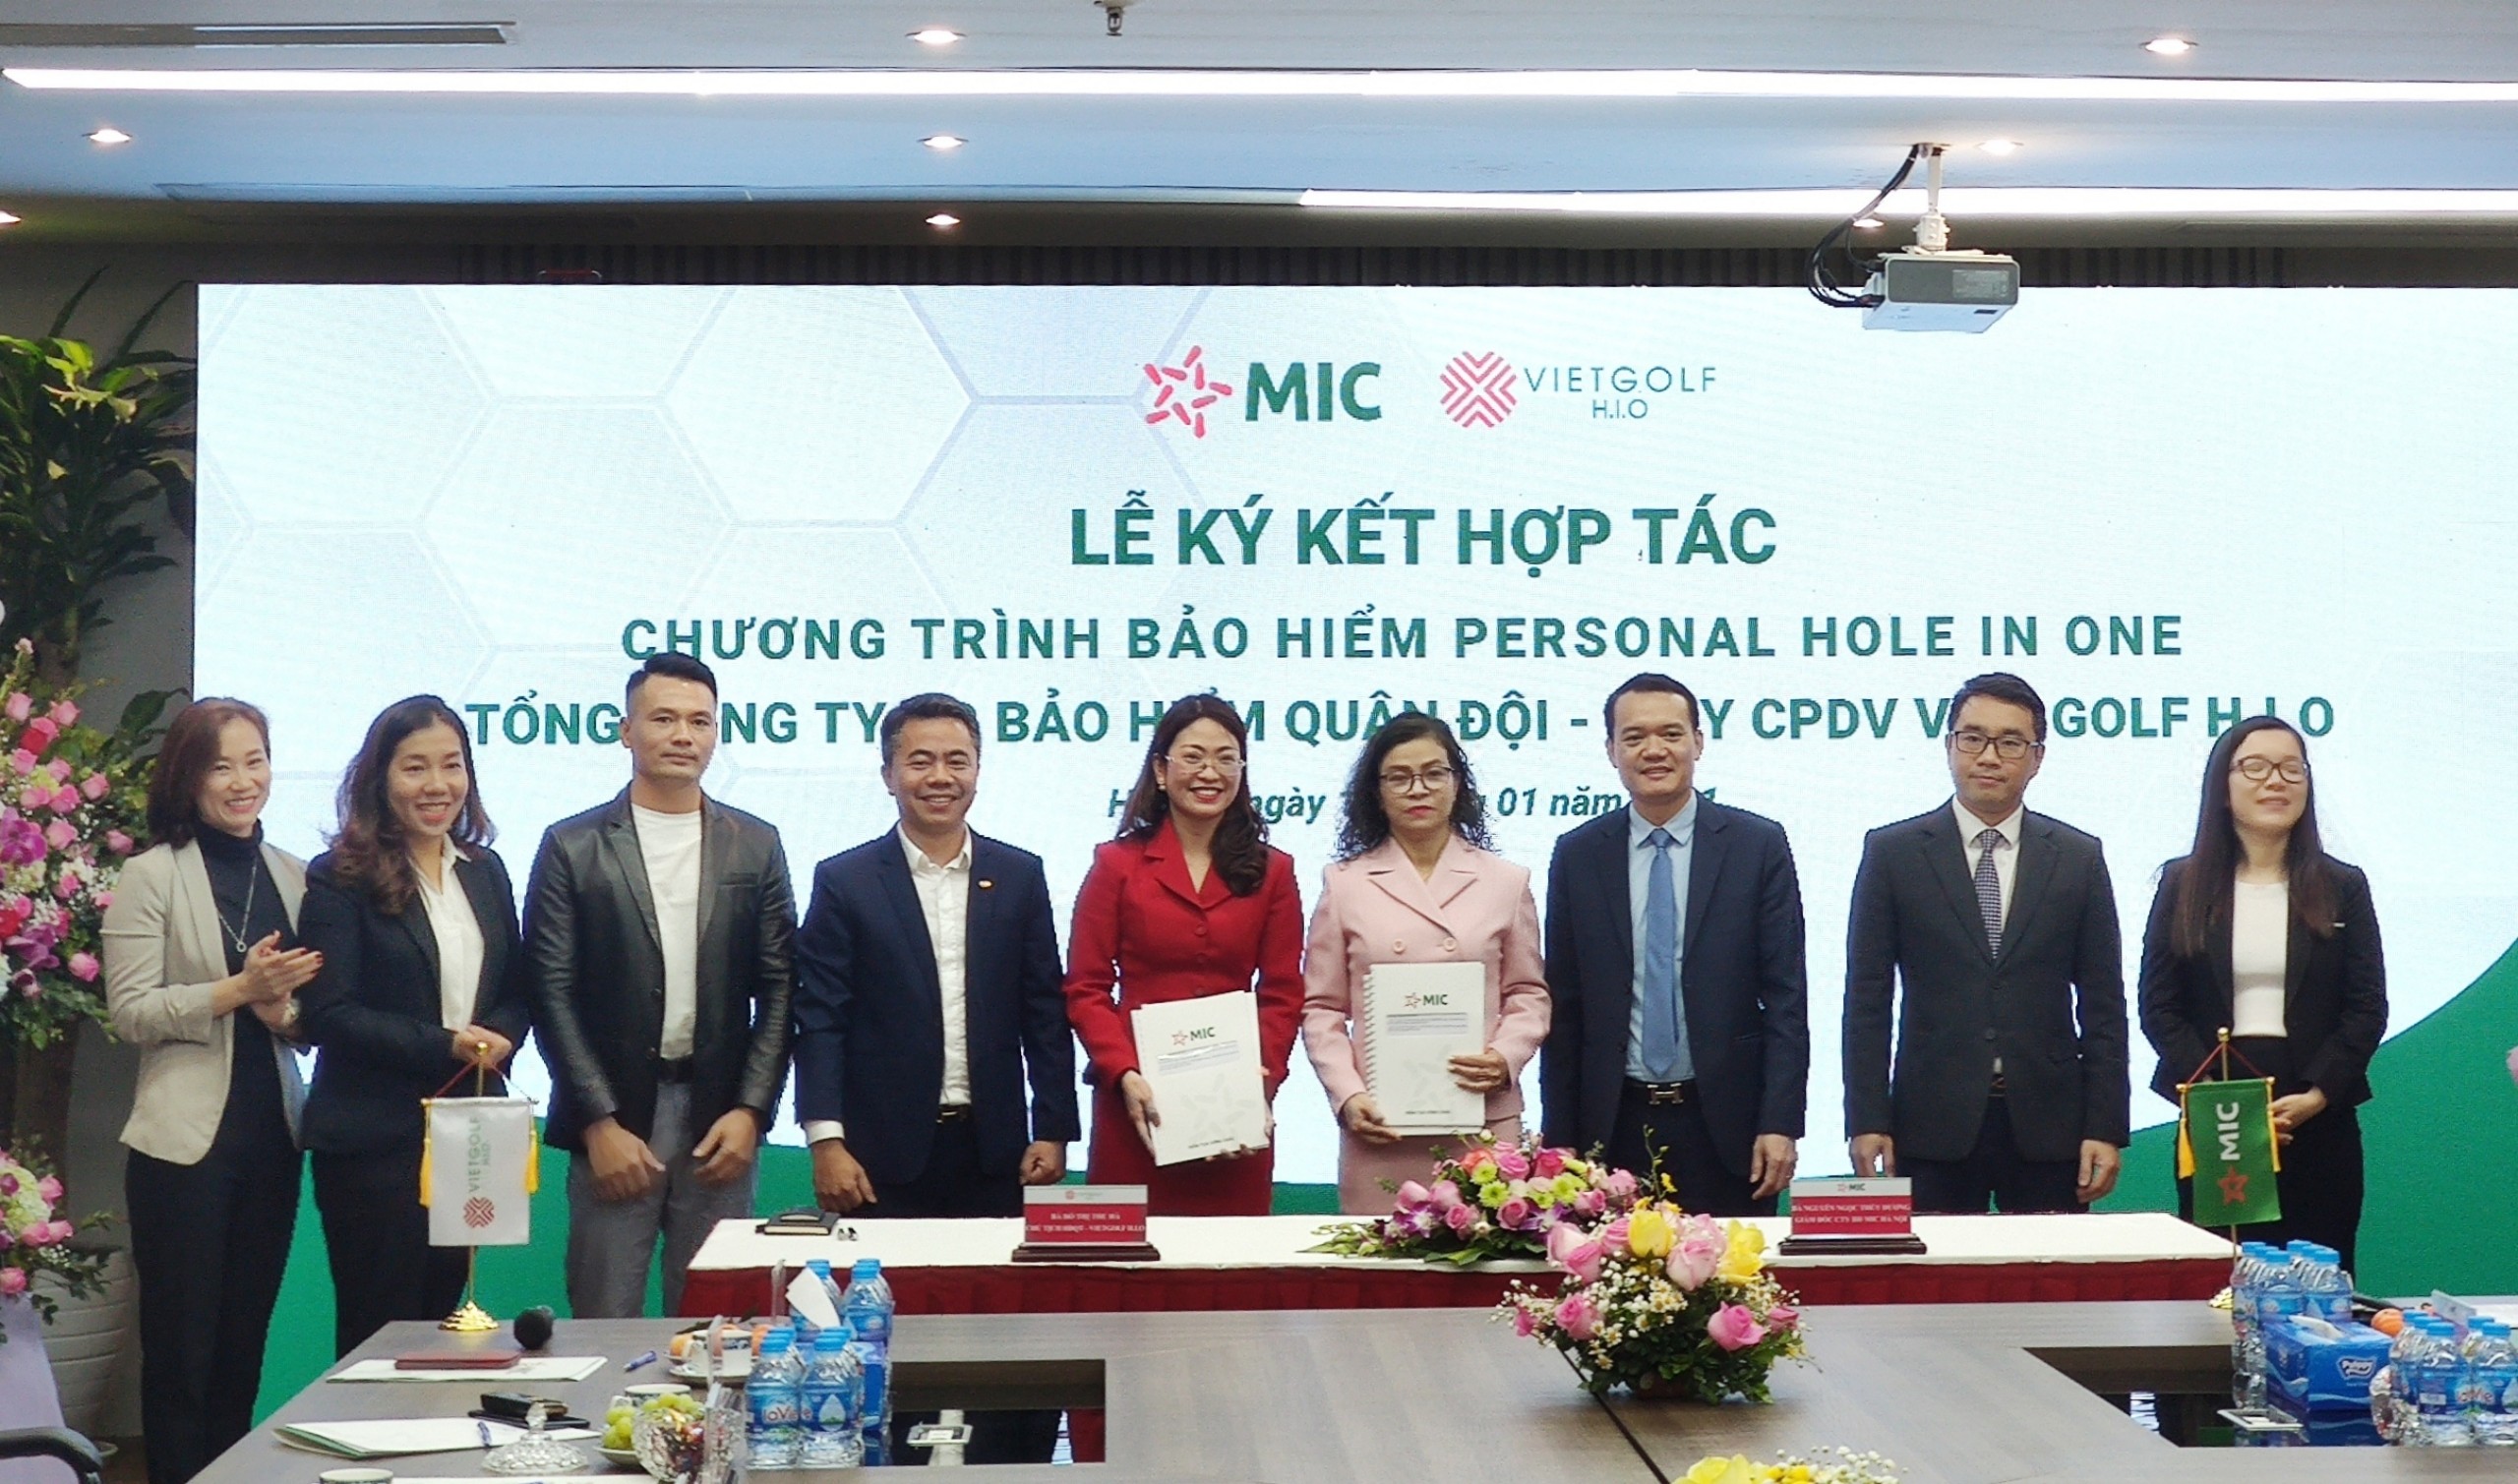 Lễ ký kết hợp tác của Hà Việt Golf và Bảo hiểm MIC